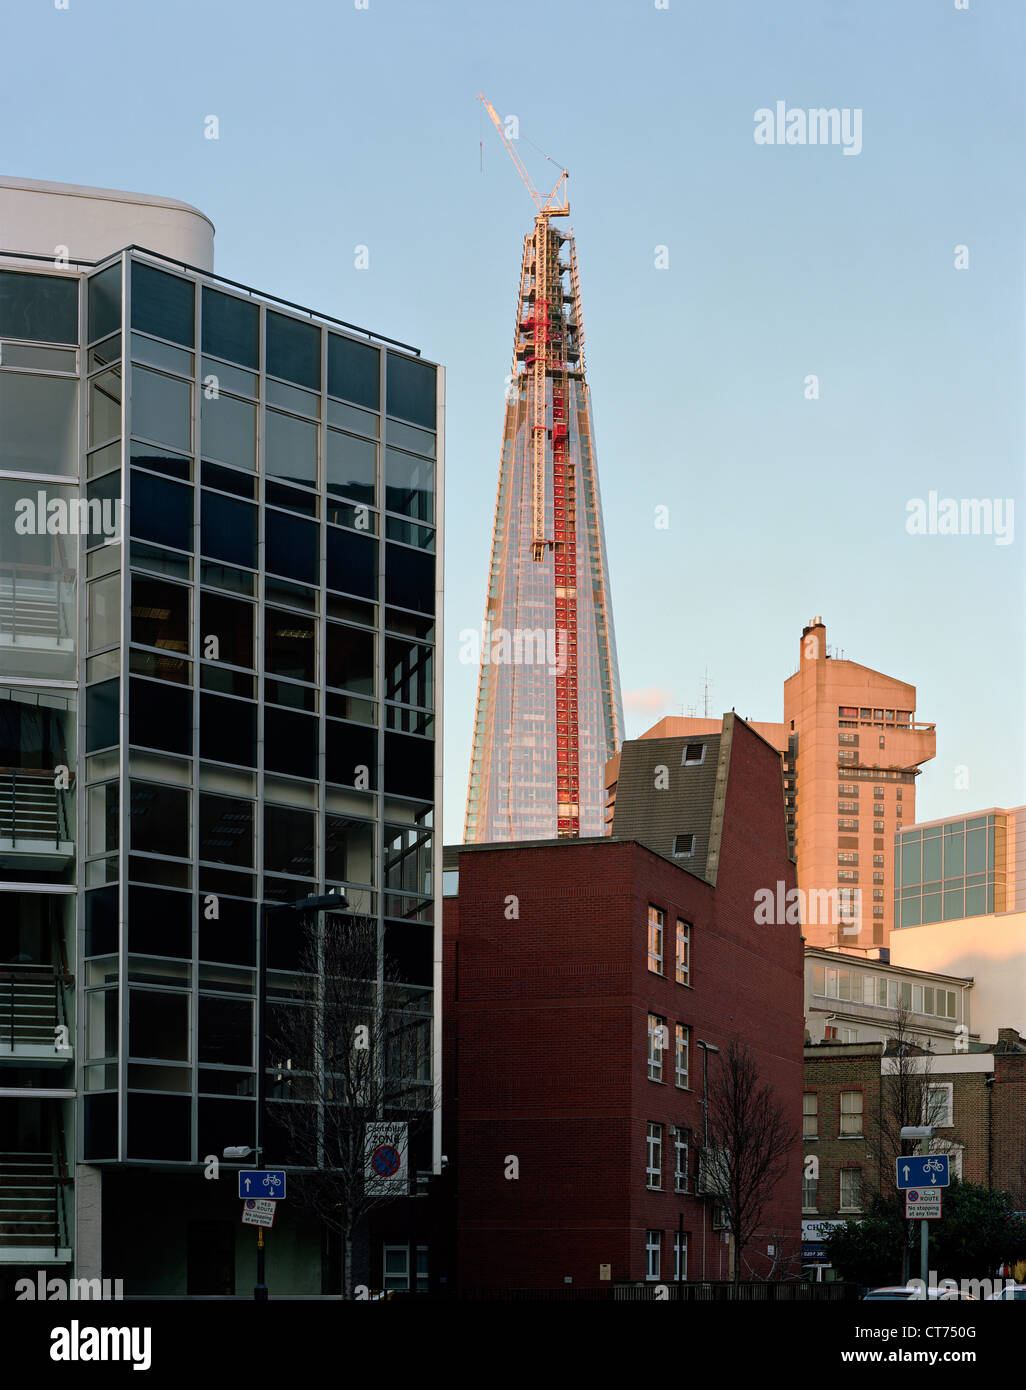 Shard, London, Vereinigtes Königreich. Architekt: Renzo Piano Building Workshop, 2012. Winter-Sonnenuntergang mit warmen Tönen. Blick vom großen tun Stockfoto